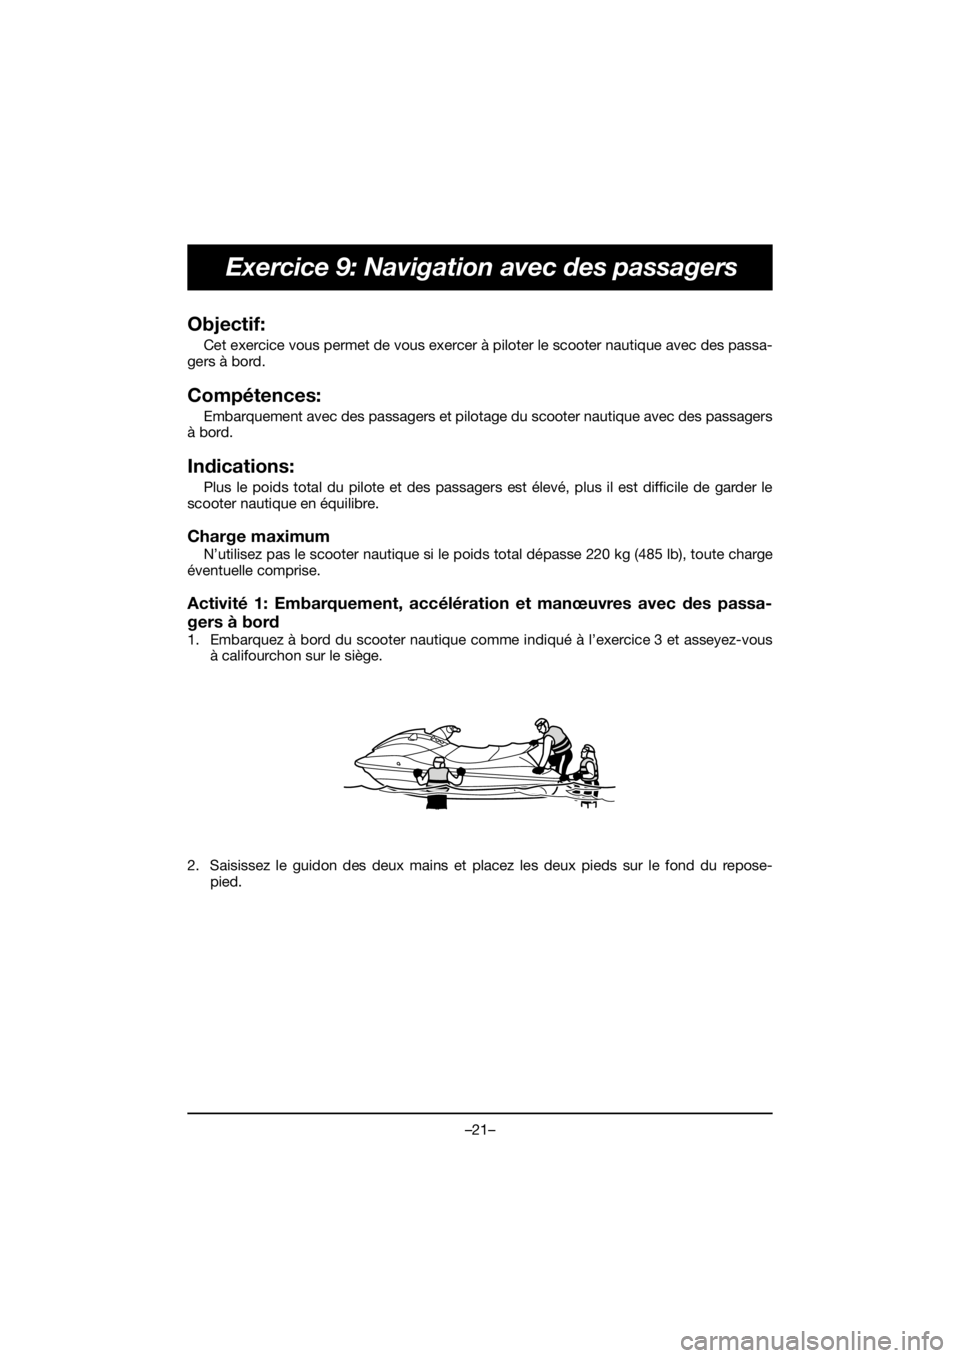 YAMAHA FJR1300 2020  ΟΔΗΓΌΣ ΧΡΉΣΗΣ (in Greek) –21–
Exercice 9: Navigation avec des passagers
Objectif: 
Cet exercice vous permet de vous exercer à piloter le scooter nautique avec des passa-
gers à bord.
Compétences: 
Embarquement avec des